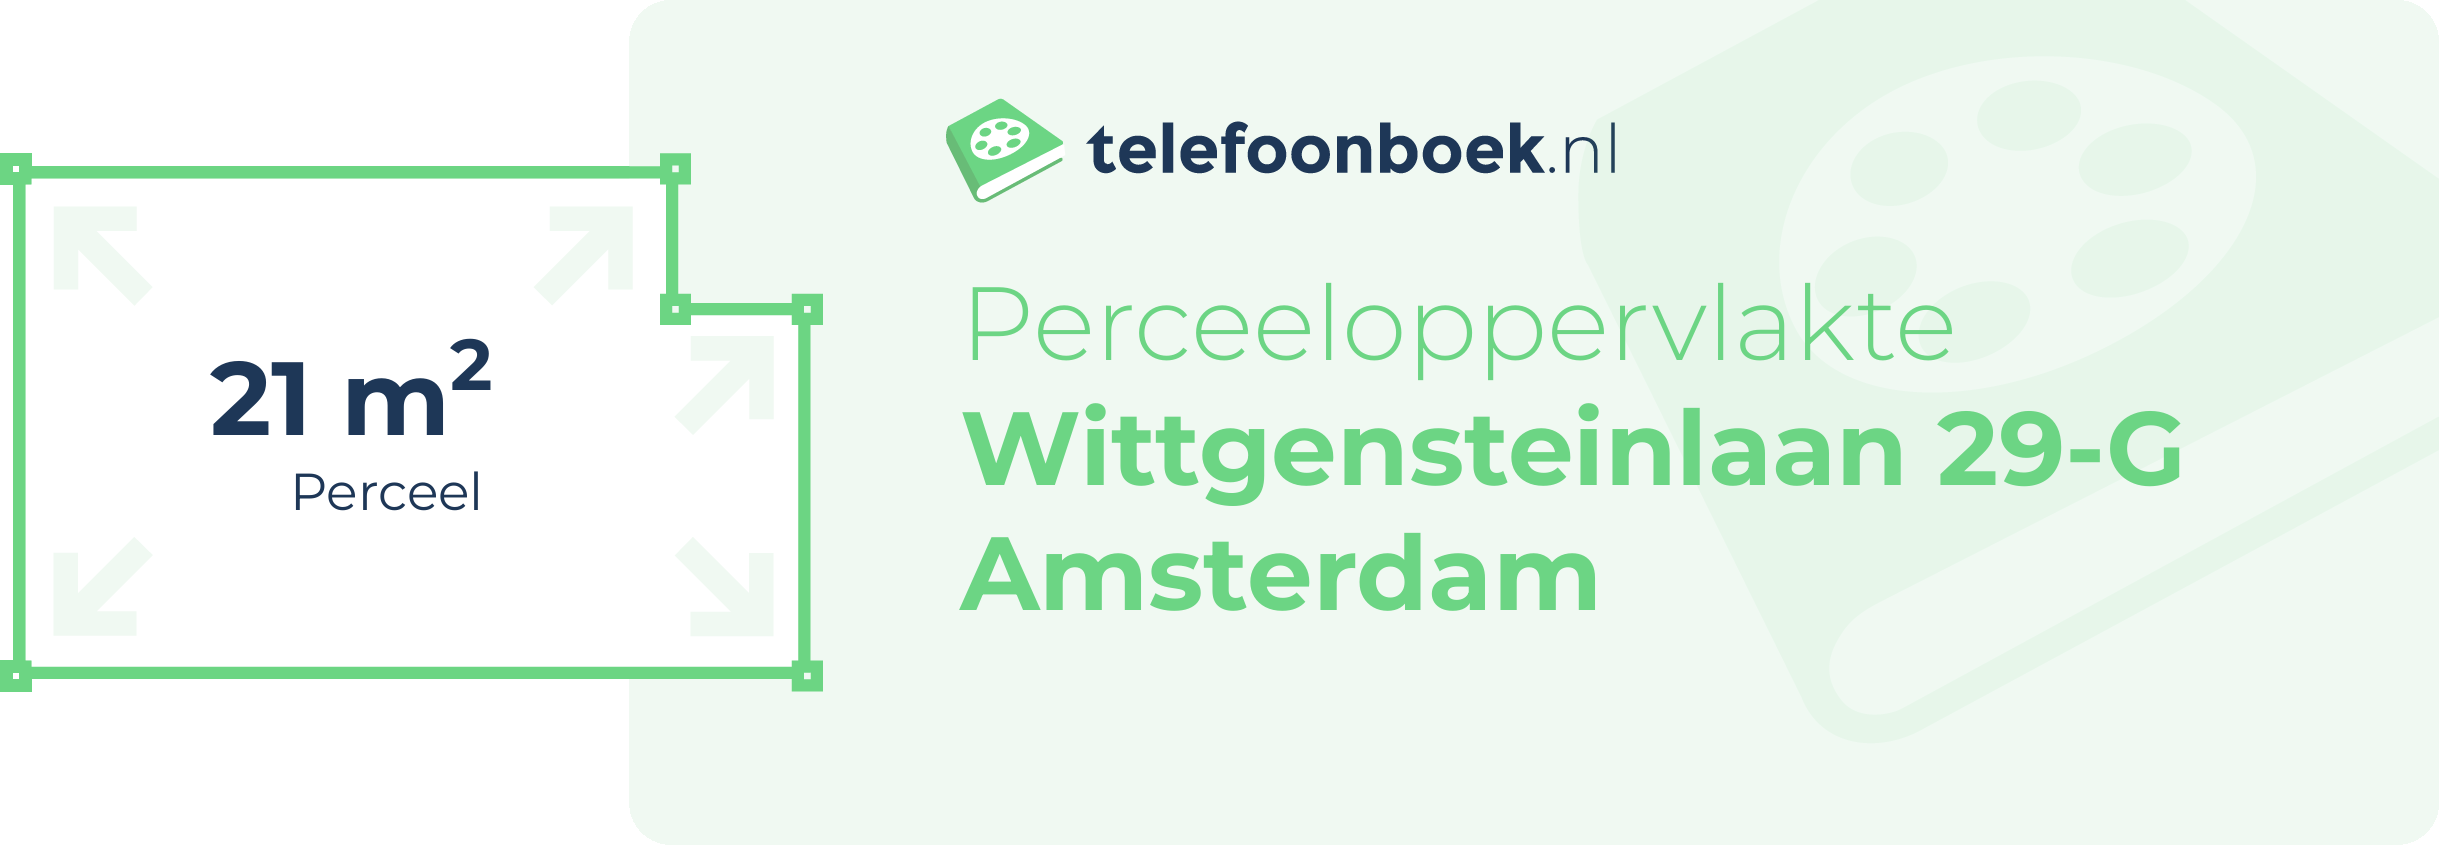 Perceeloppervlakte Wittgensteinlaan 29-G Amsterdam